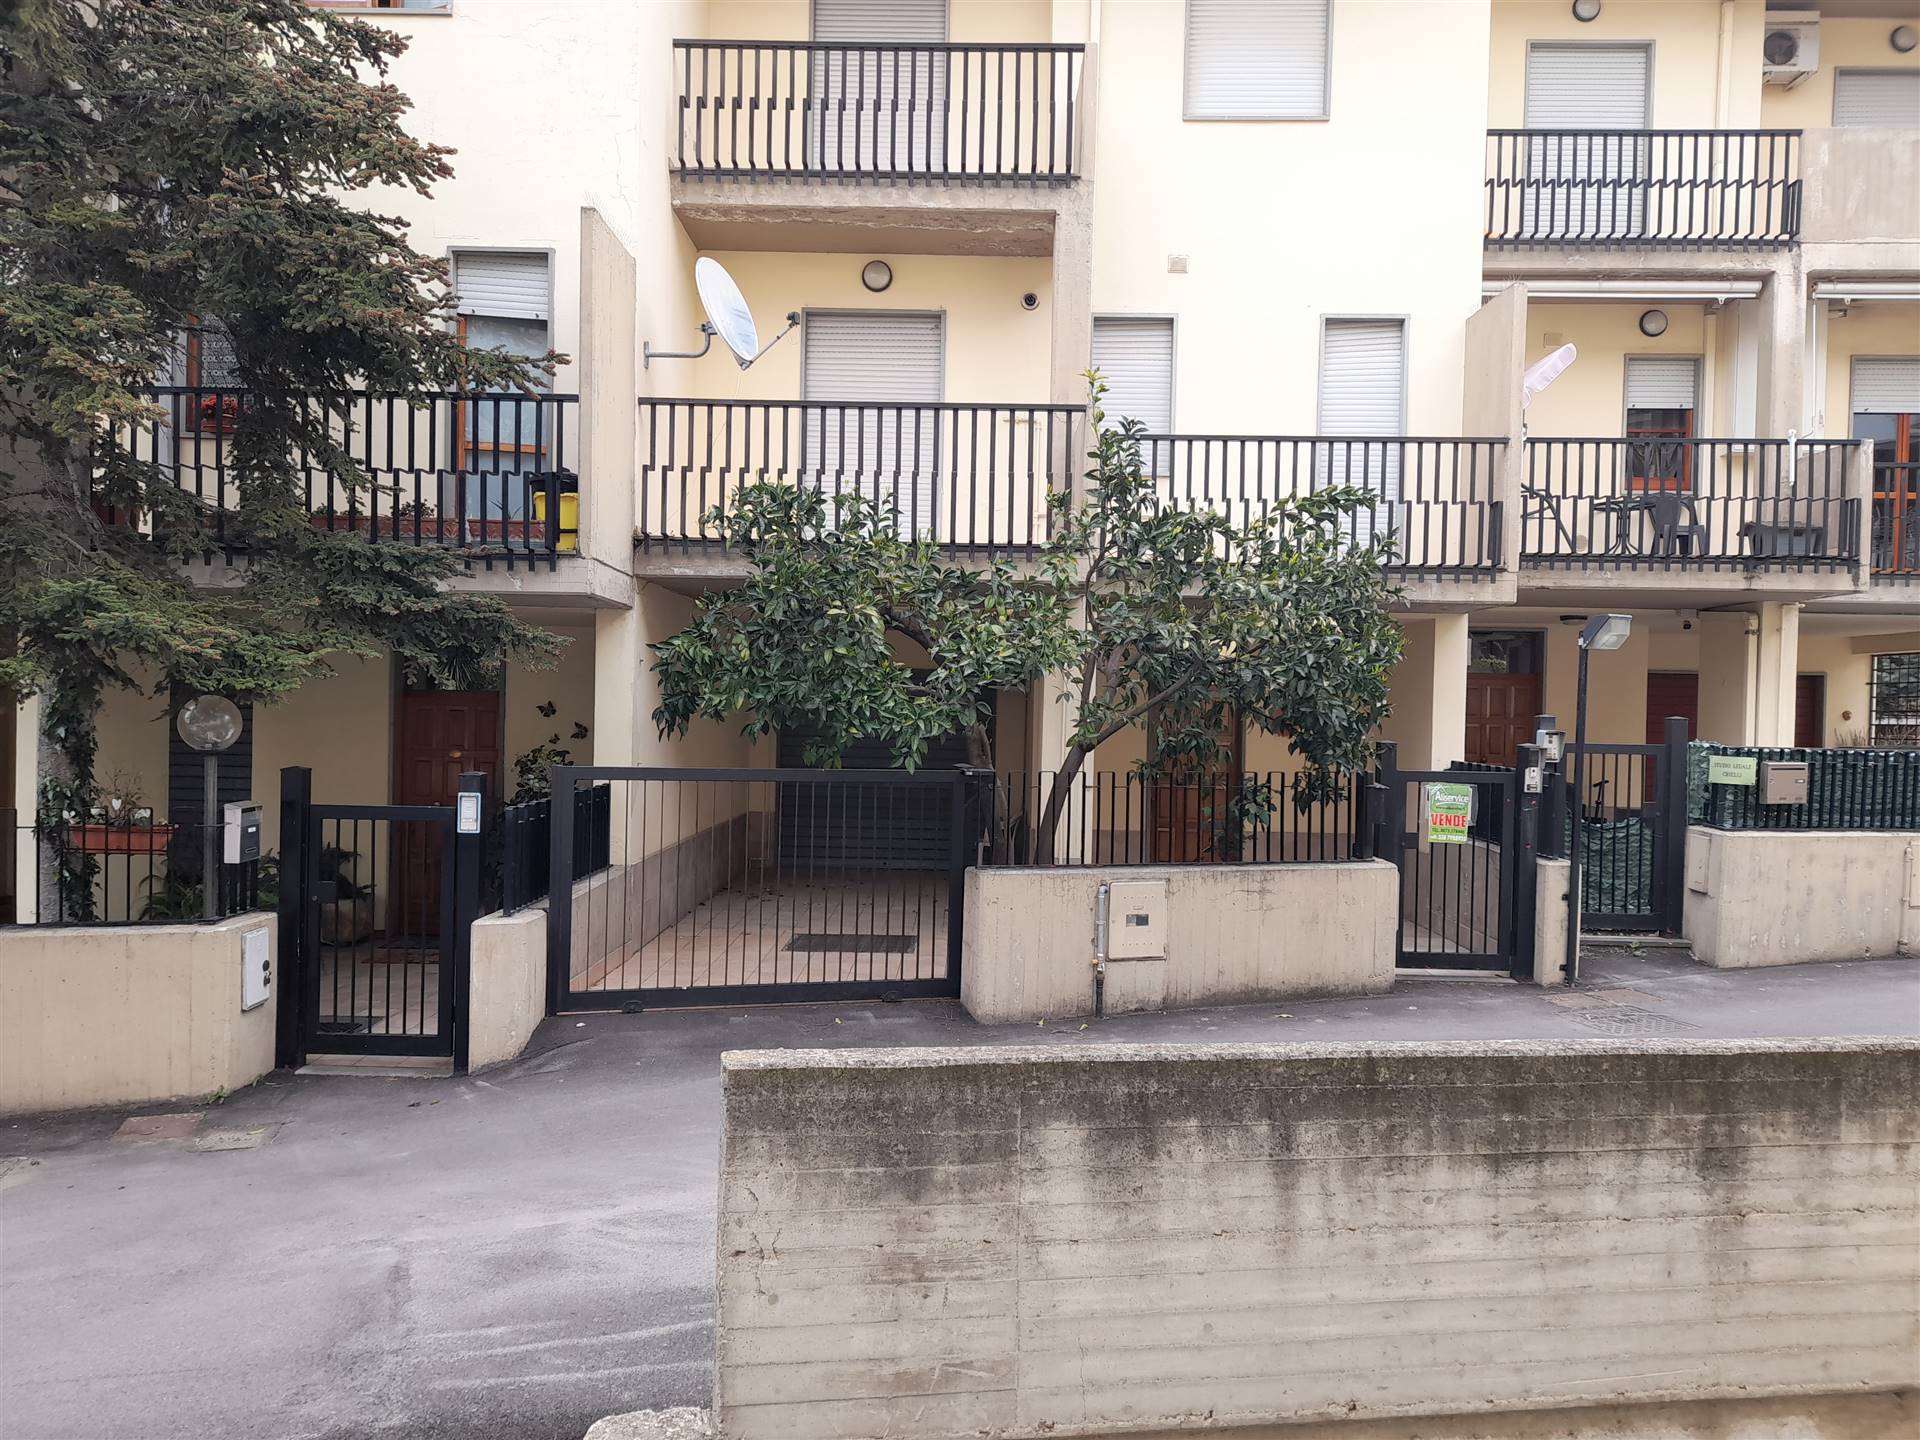 V -350 L'agenzia immobiliare Aliservice propone in vendita a Vasto in Corso Mazzini, una villa su quattro livelli di circa mq 320 con giardino e 